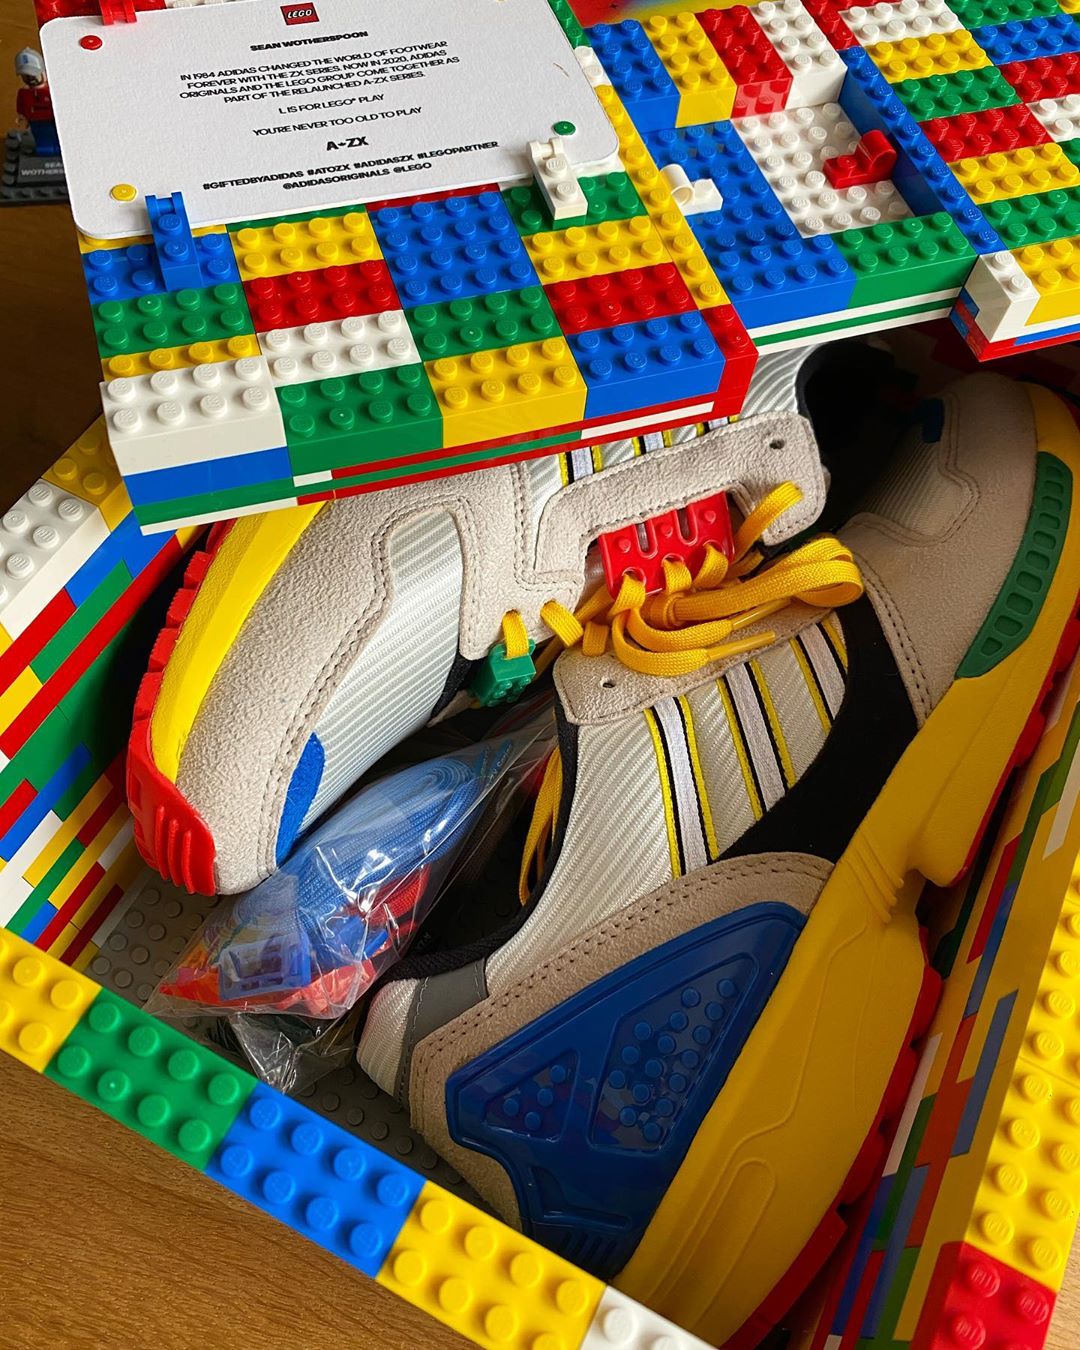 Lego e Adidas lançam colaboração inédita. De olho!